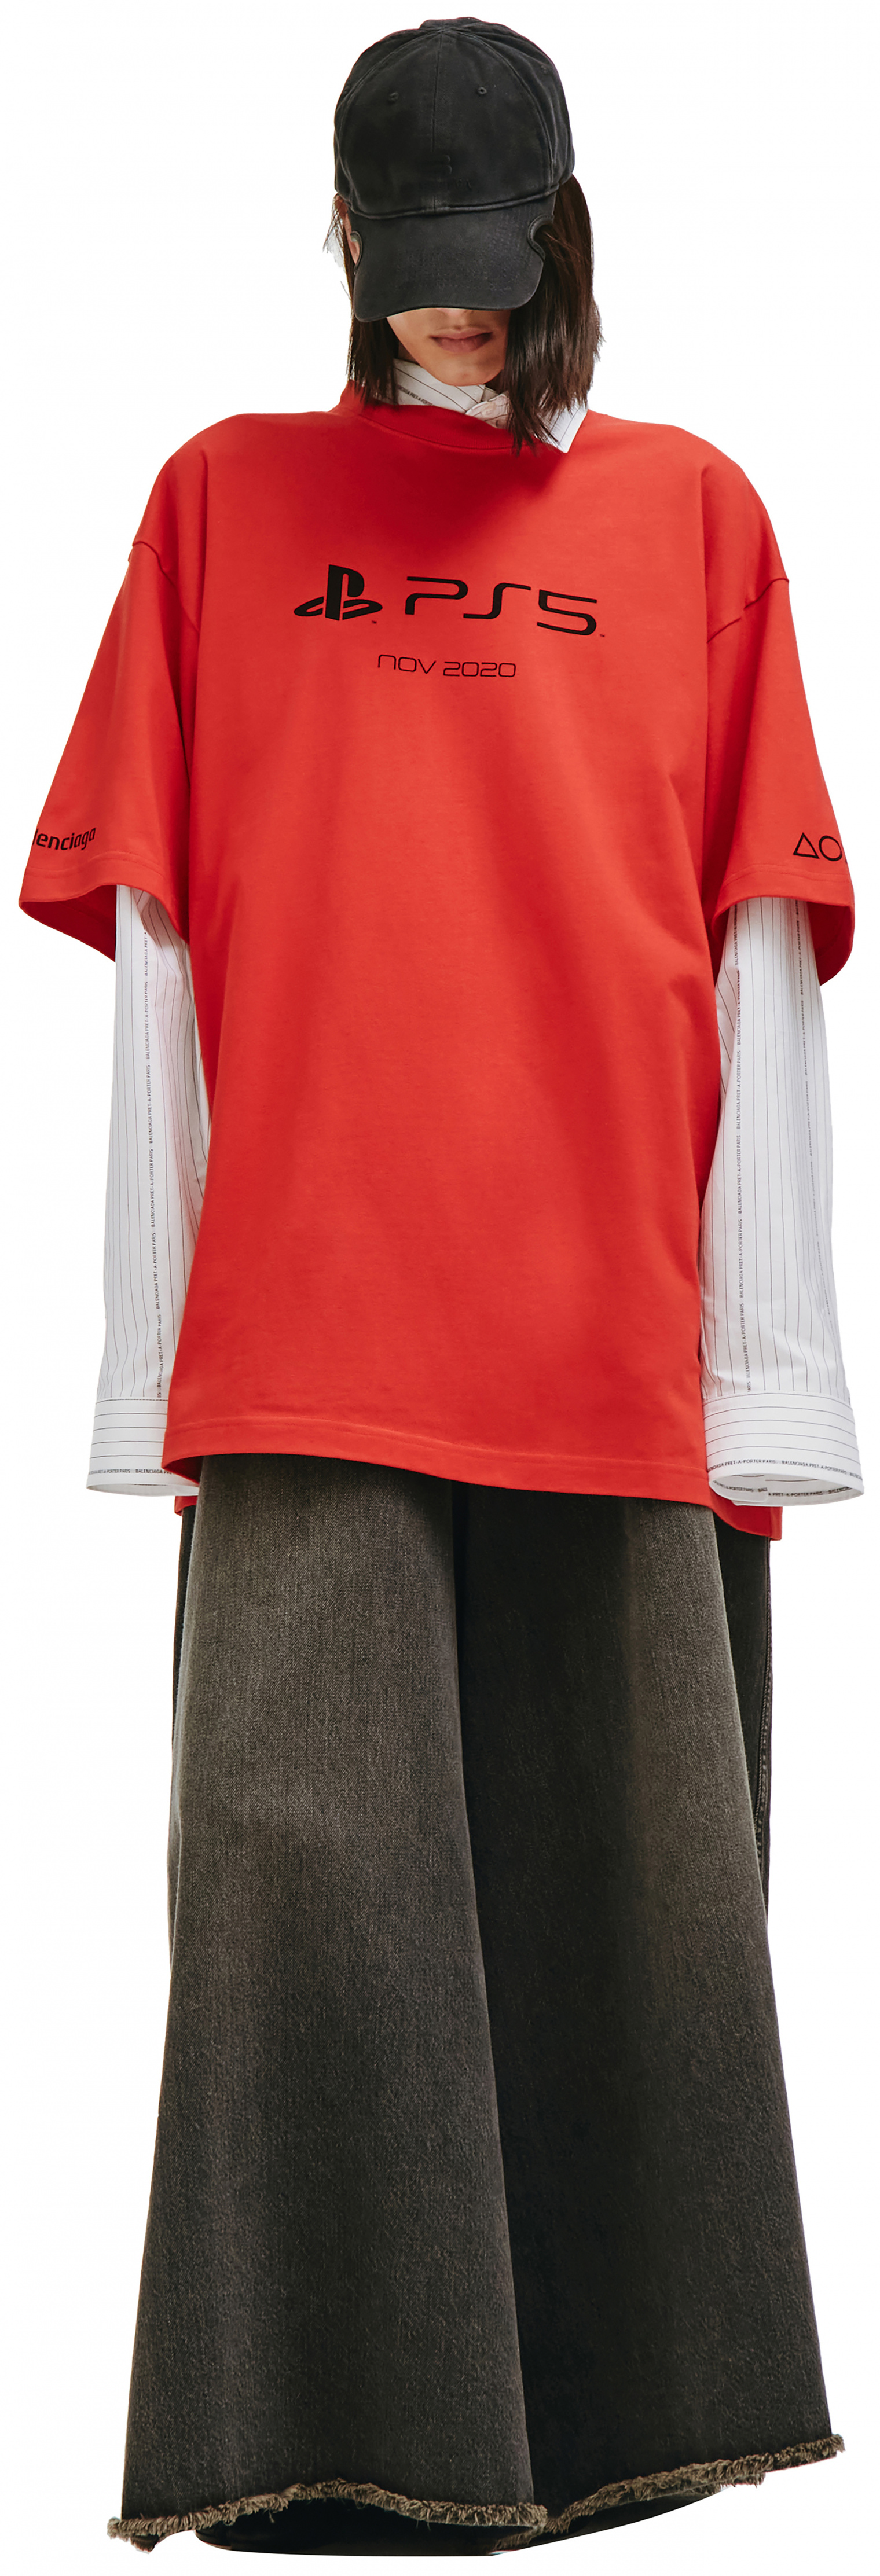 Balenciaga Playstation T-shirt in Red